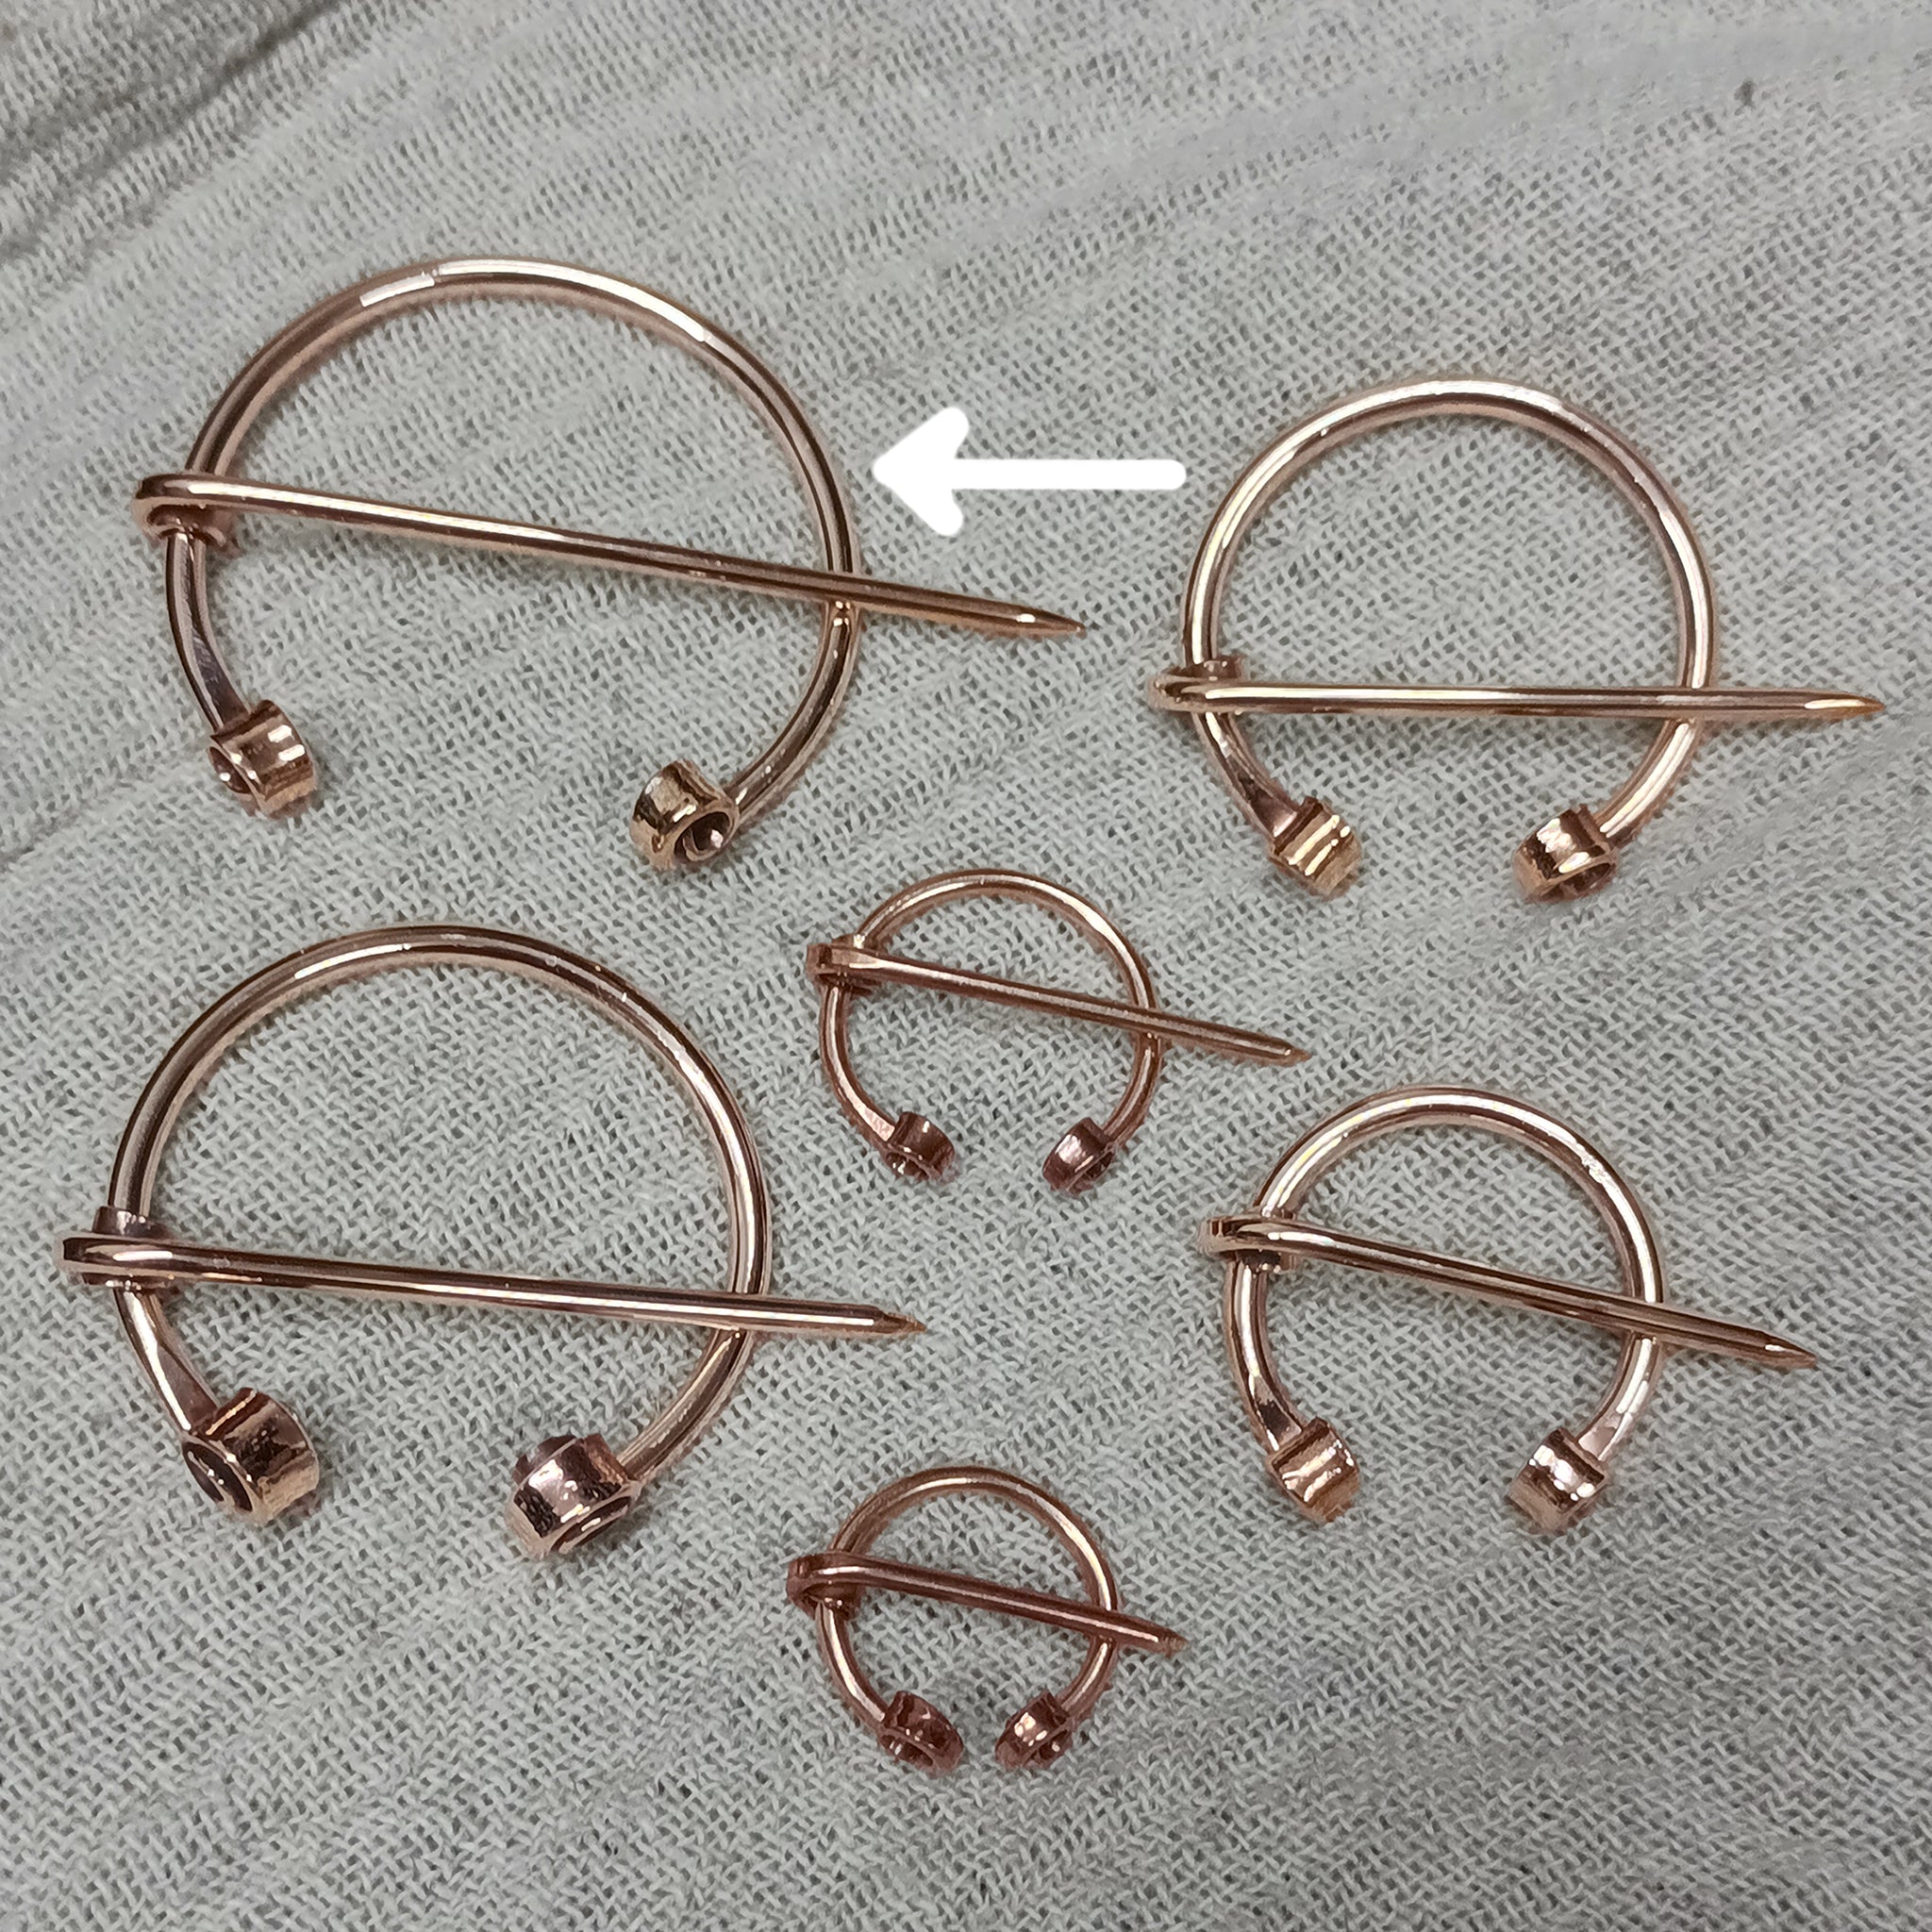 Bronze Clothes Pin / Cloak Pin / Fibula - 50mm Diameter